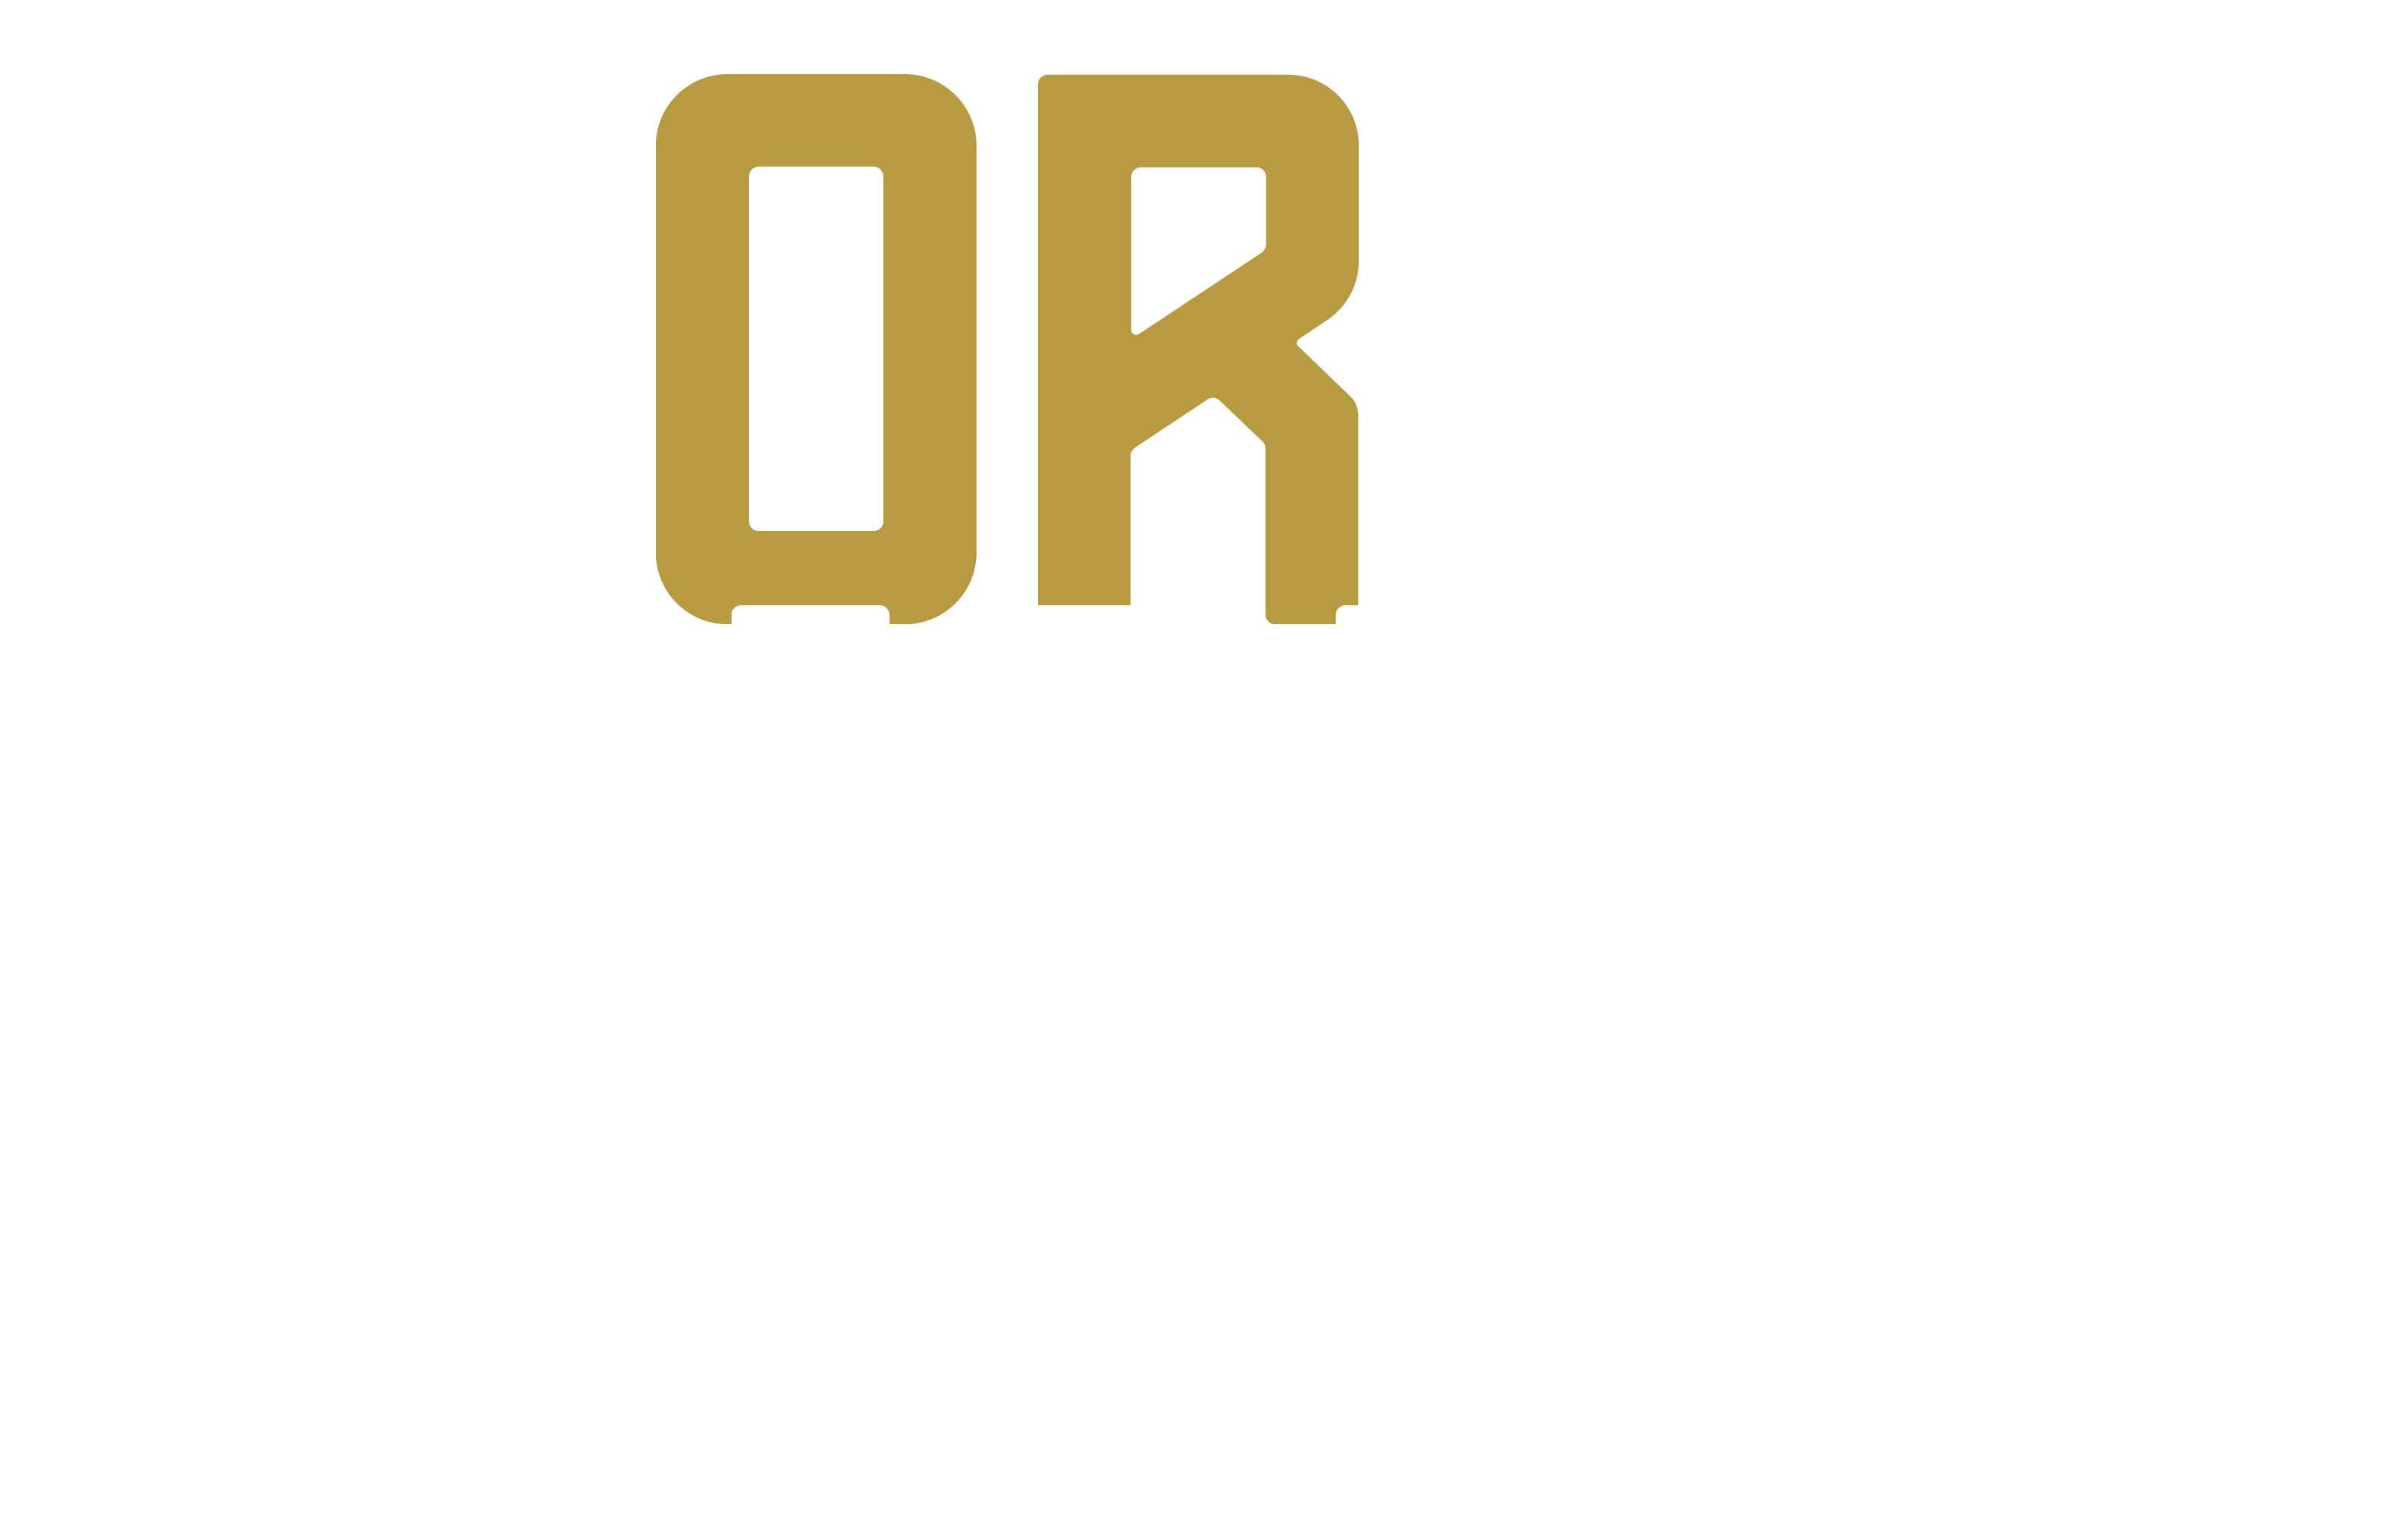 North-134